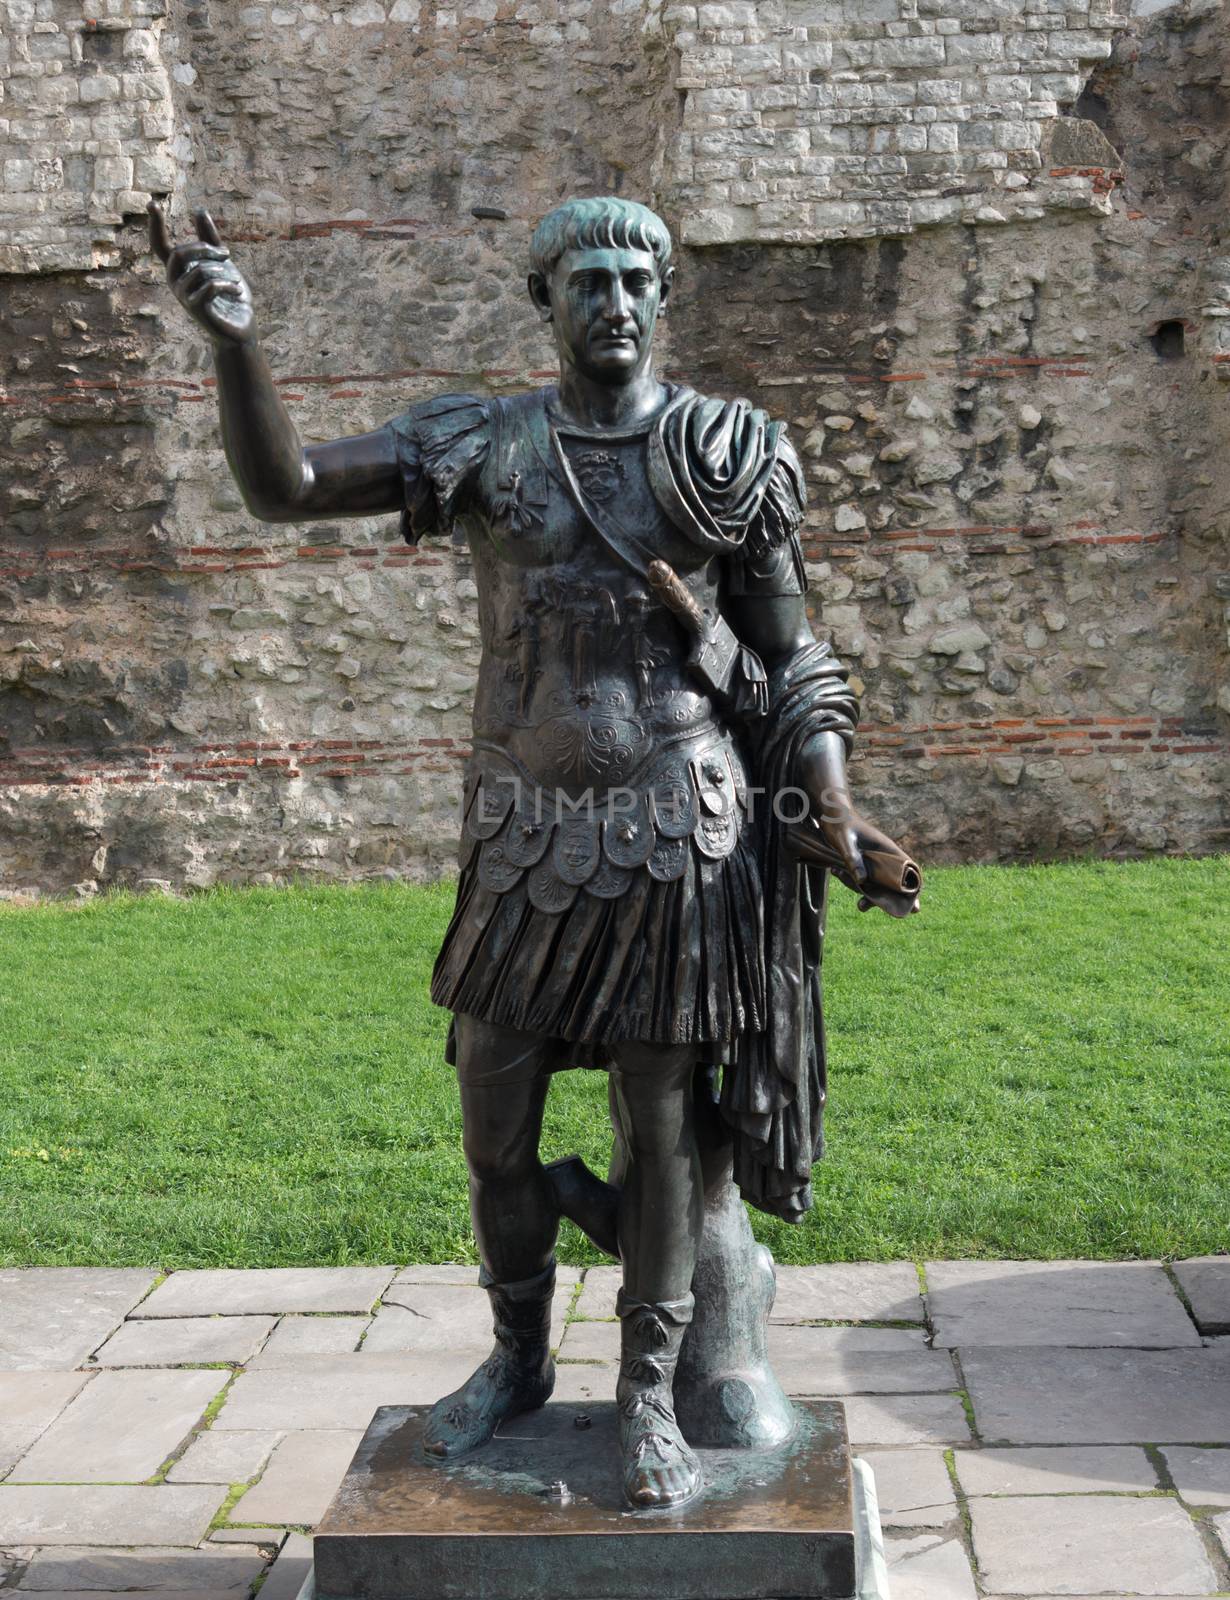 Roman Emperor Trajan by TimAwe